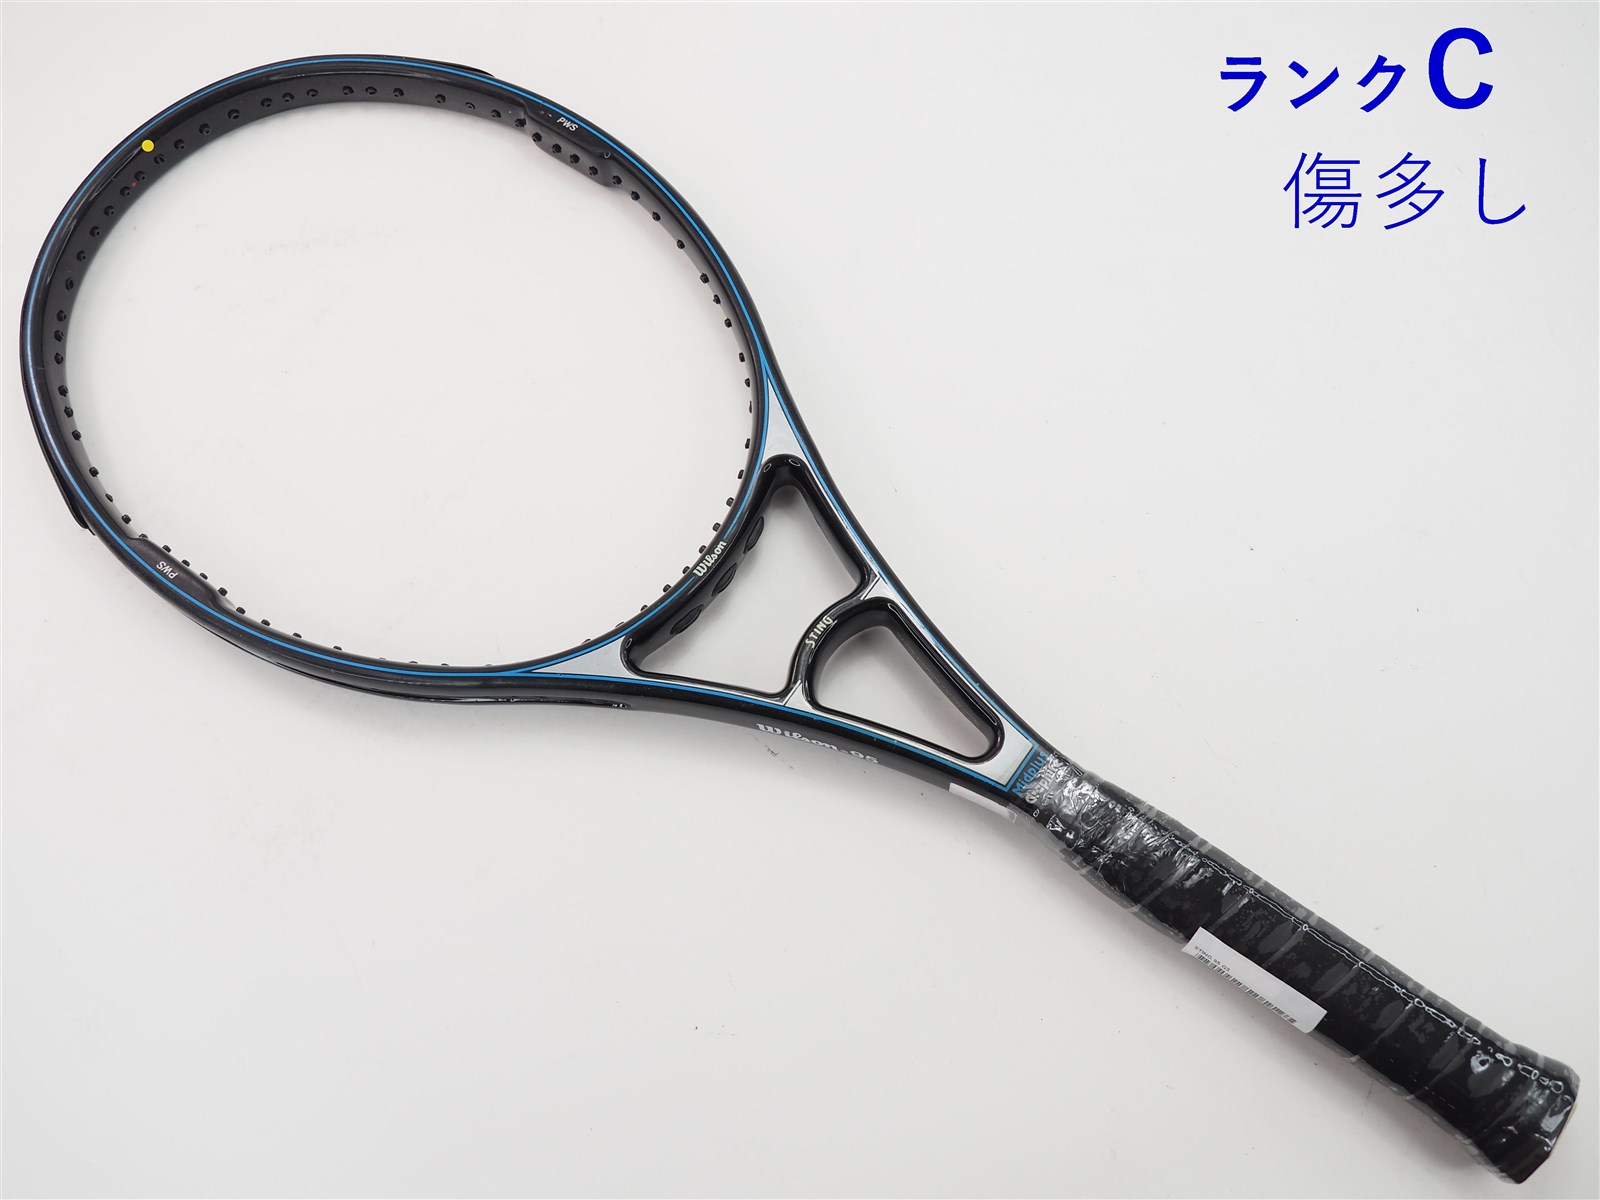 テニスラケット ウィルソン エヌ3 115 2005年モデル (G1)WILSON n3 115 2005275インチフレーム厚